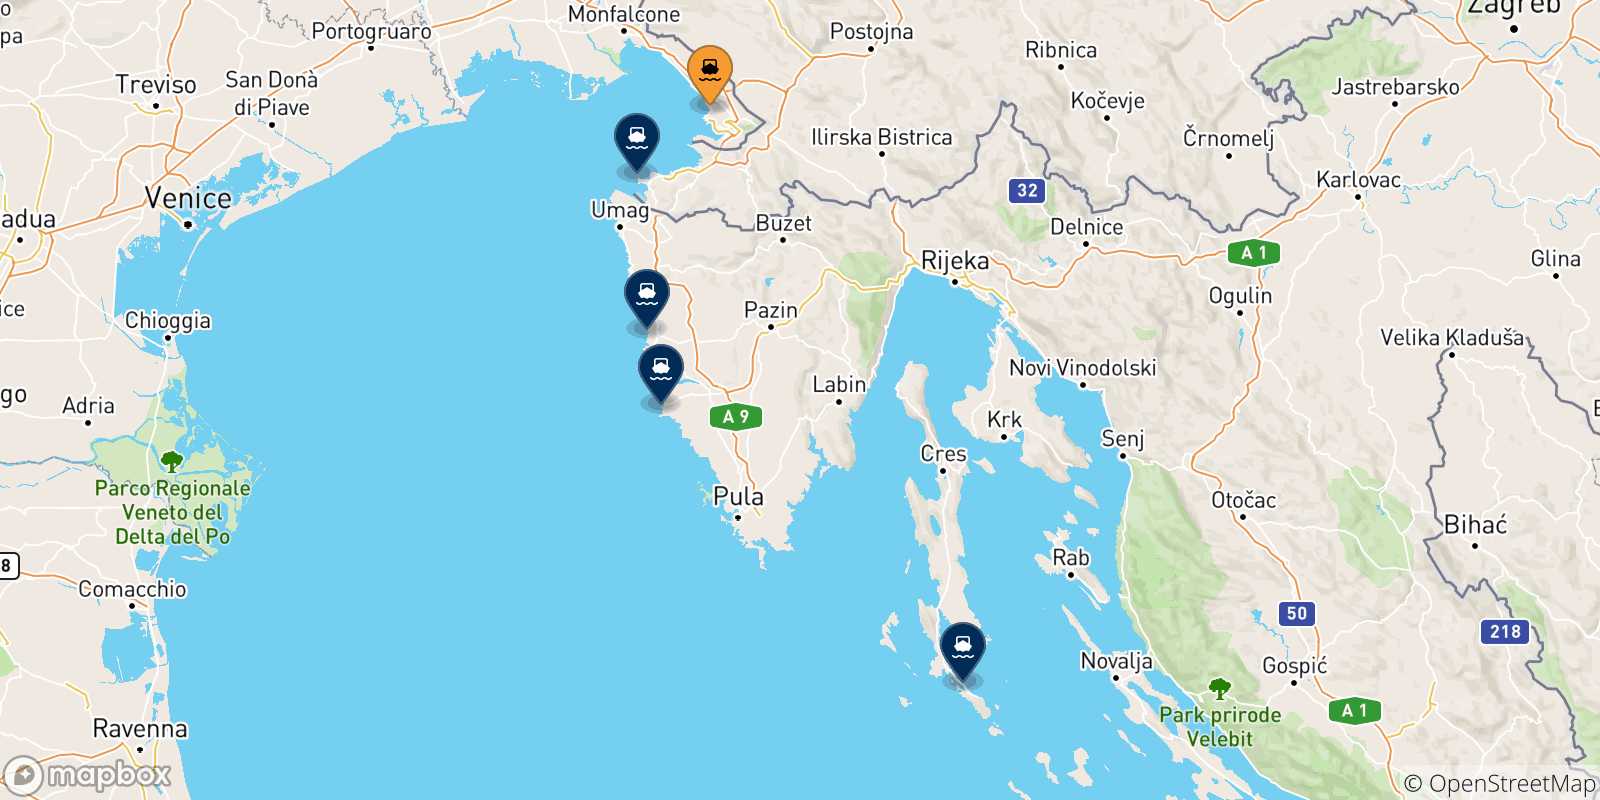 Mappa delle possibili rotte tra Trieste e la Croazia